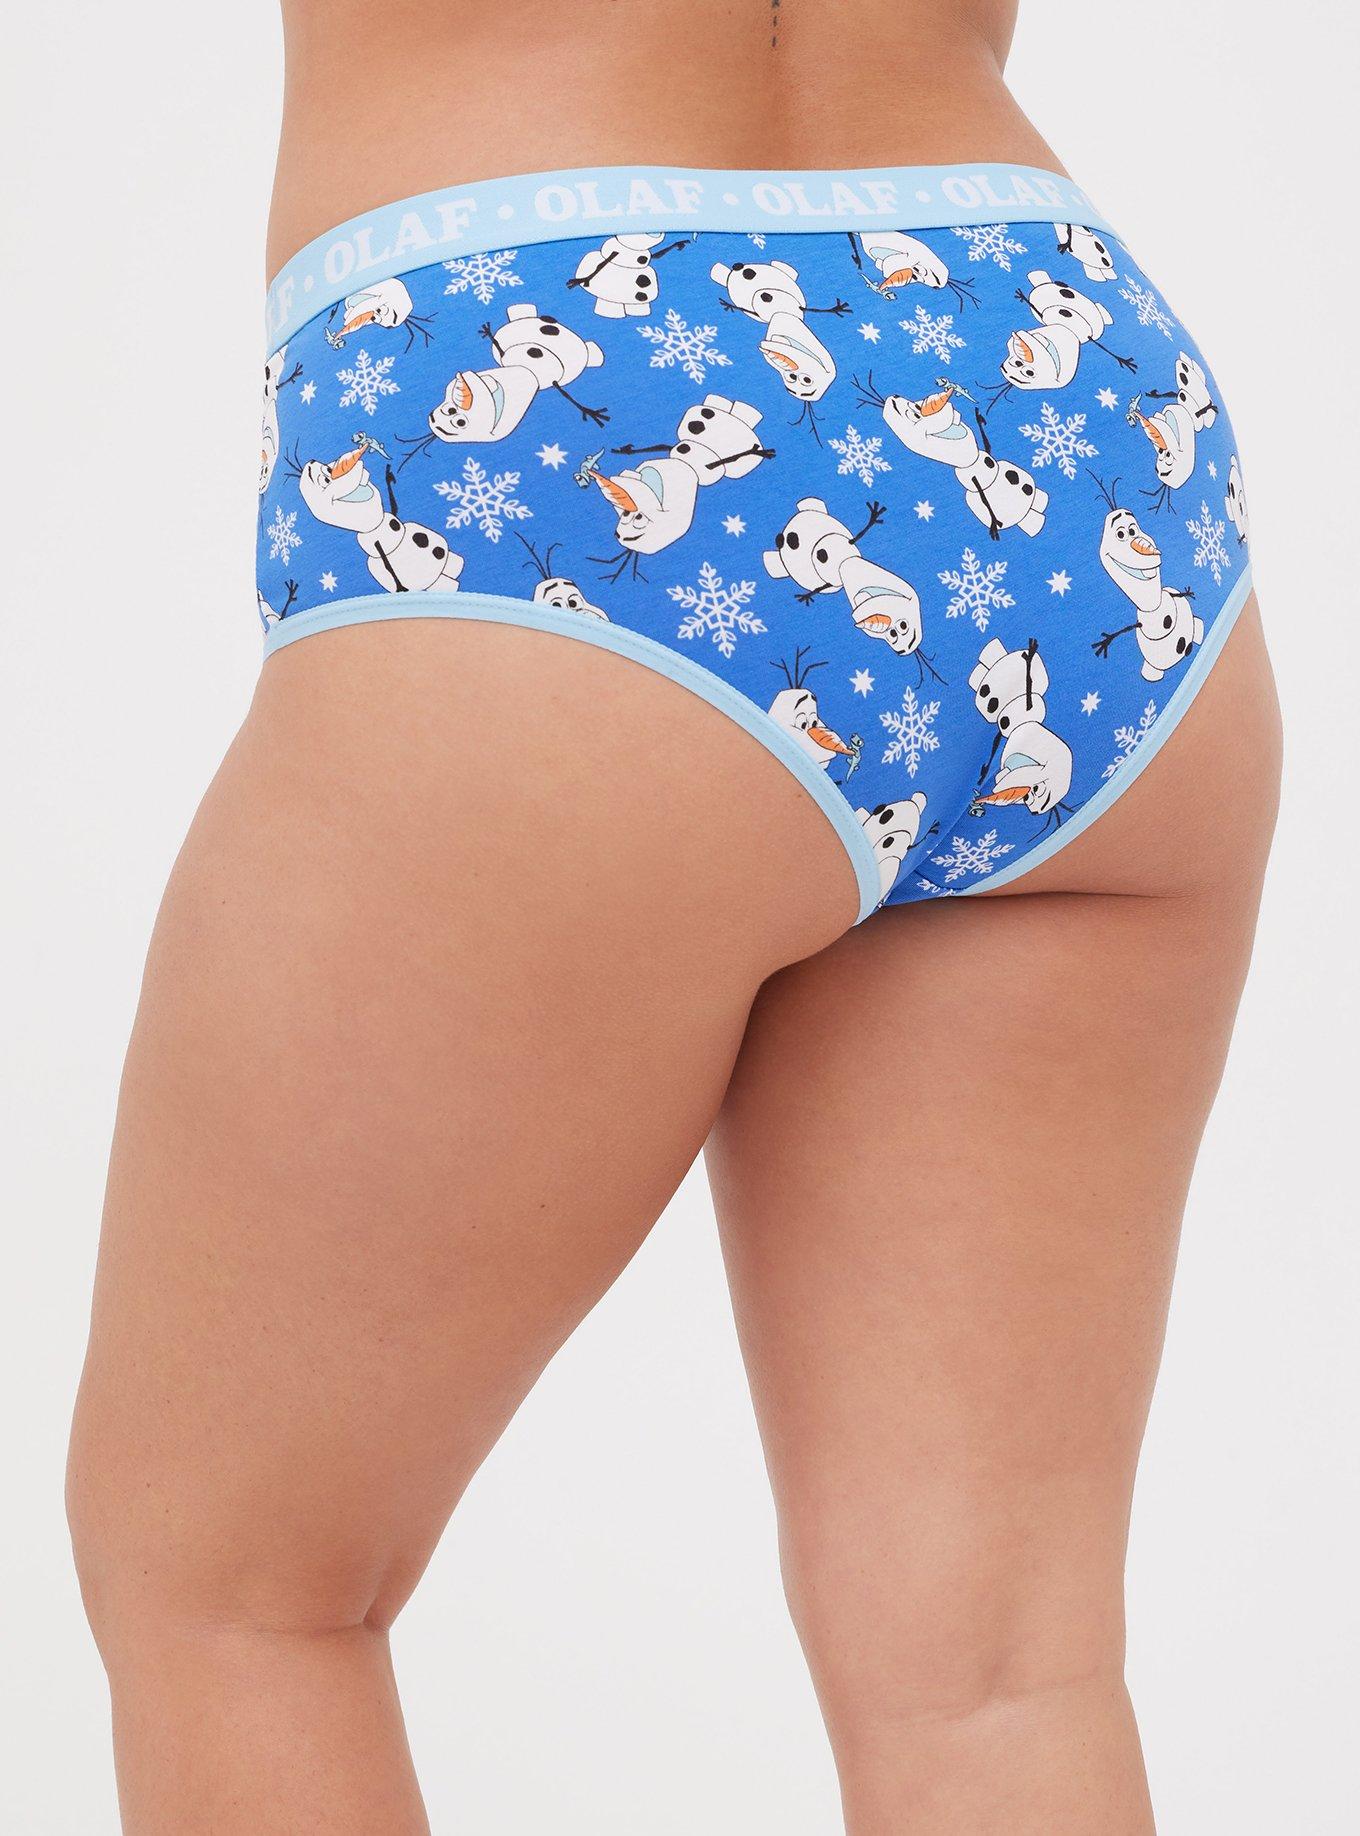 Torrid Cheeky Panties Underwear Halloween Mickey Mouse Spiderweb Plus 5 28